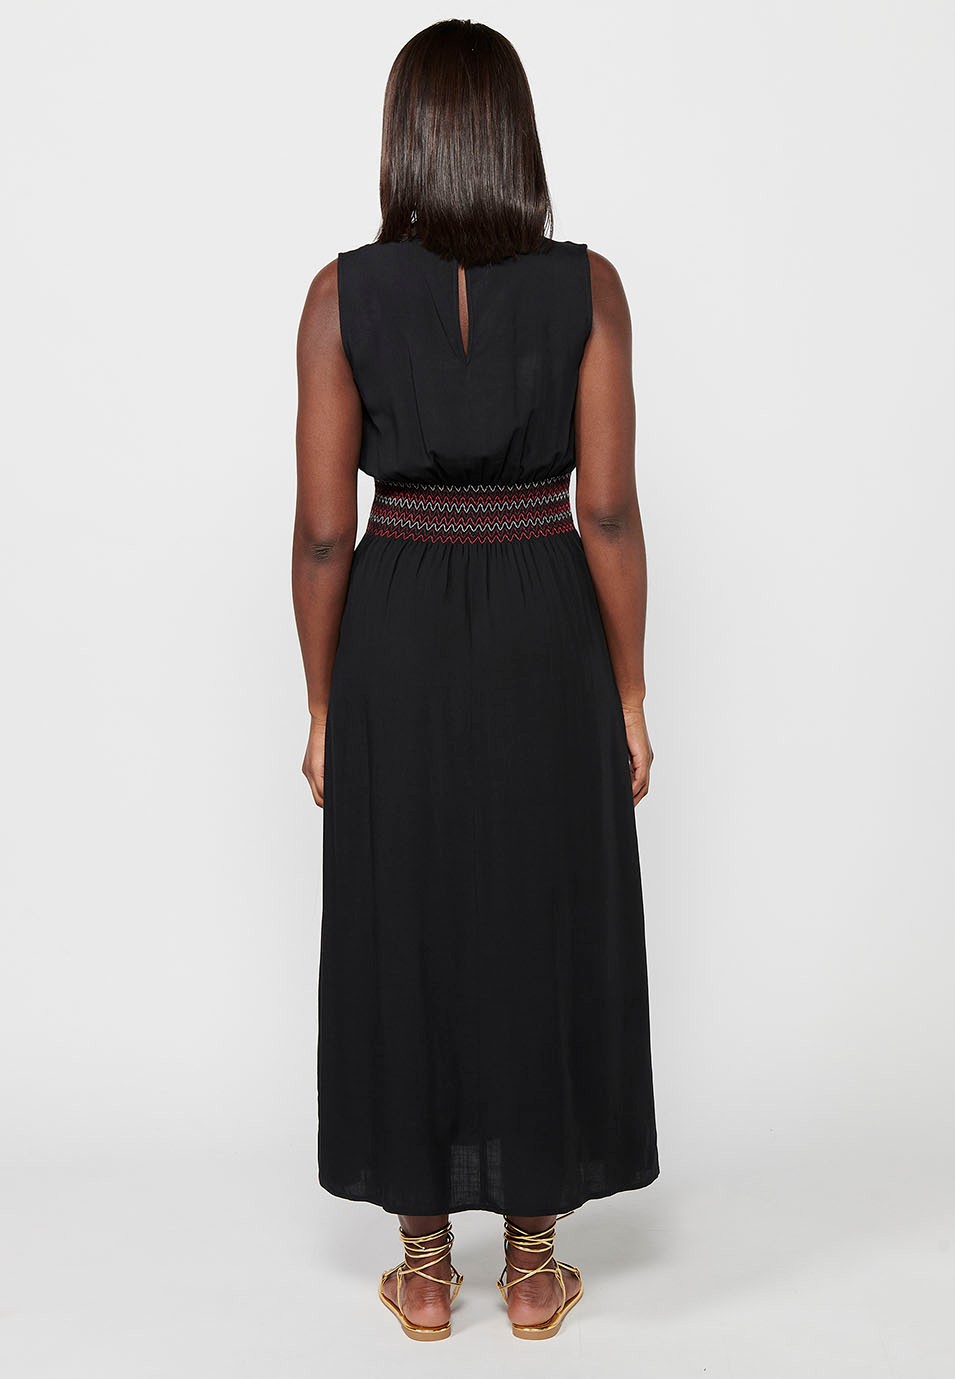 Long sleeveless dress, V-neckline, rubberized waist, black color for women